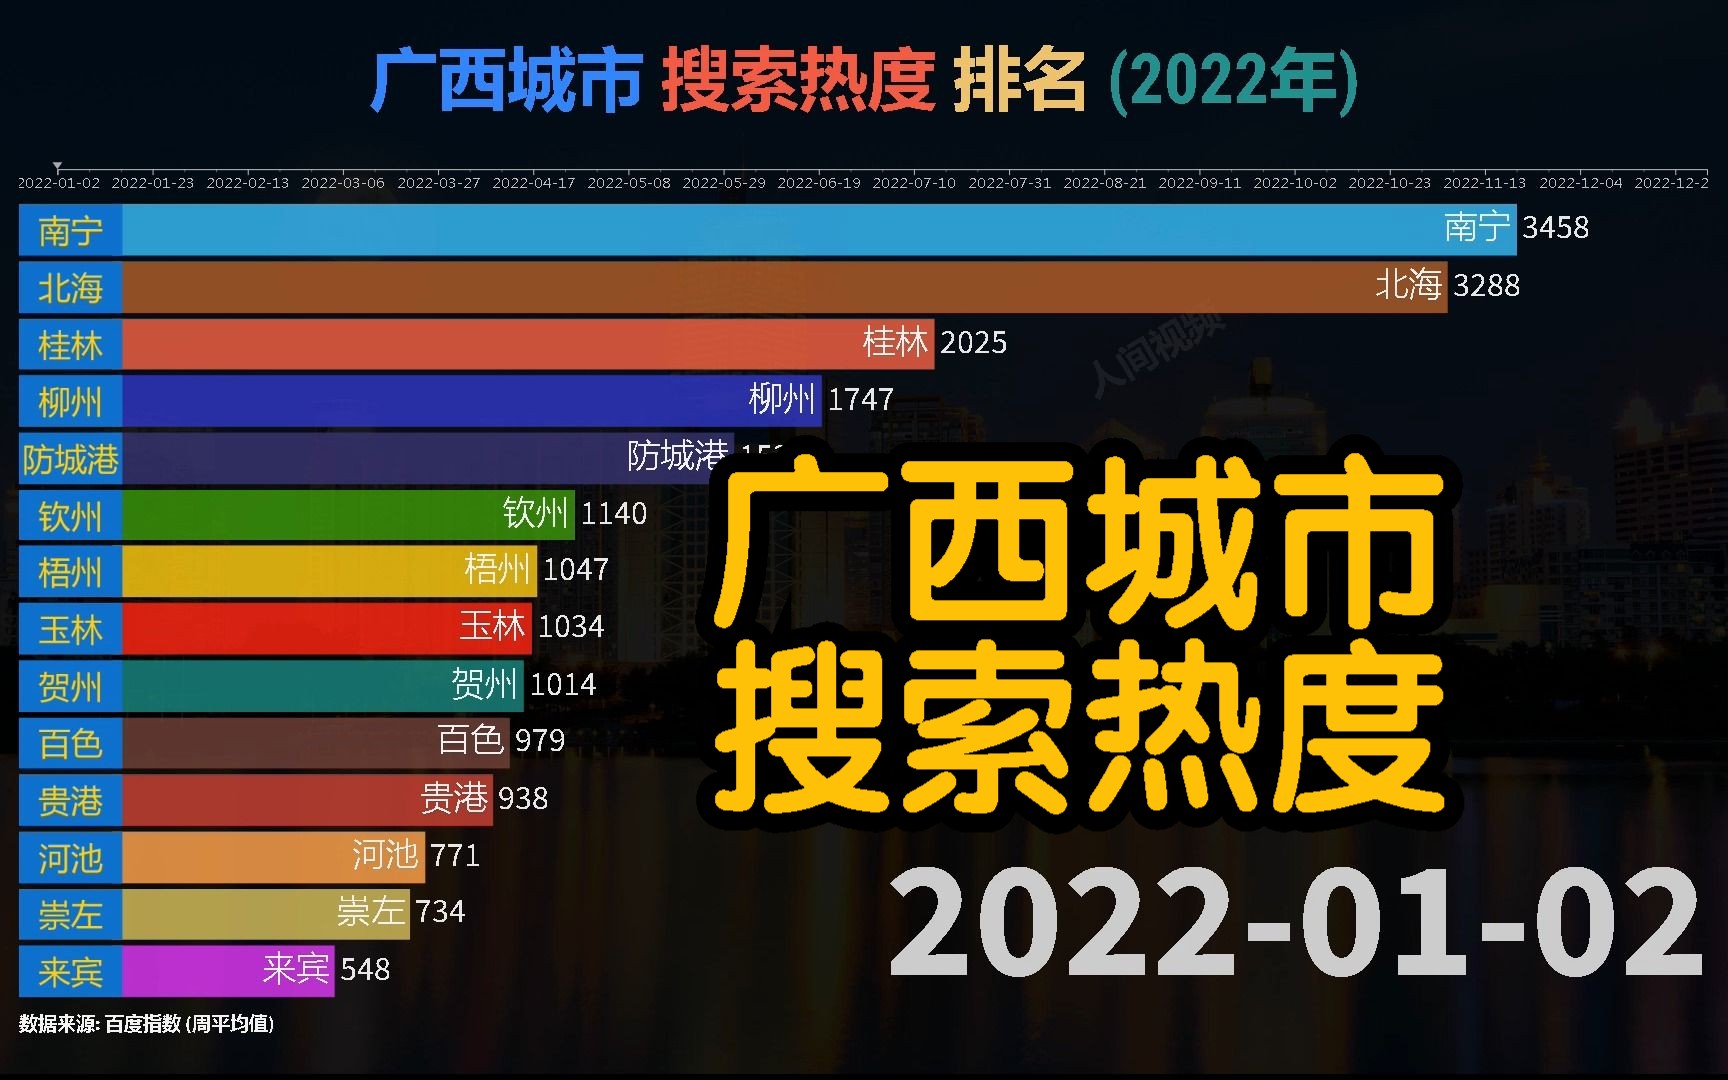 广西城市 搜索热度 排名 (2022年), 你最喜欢哪个城市呢?